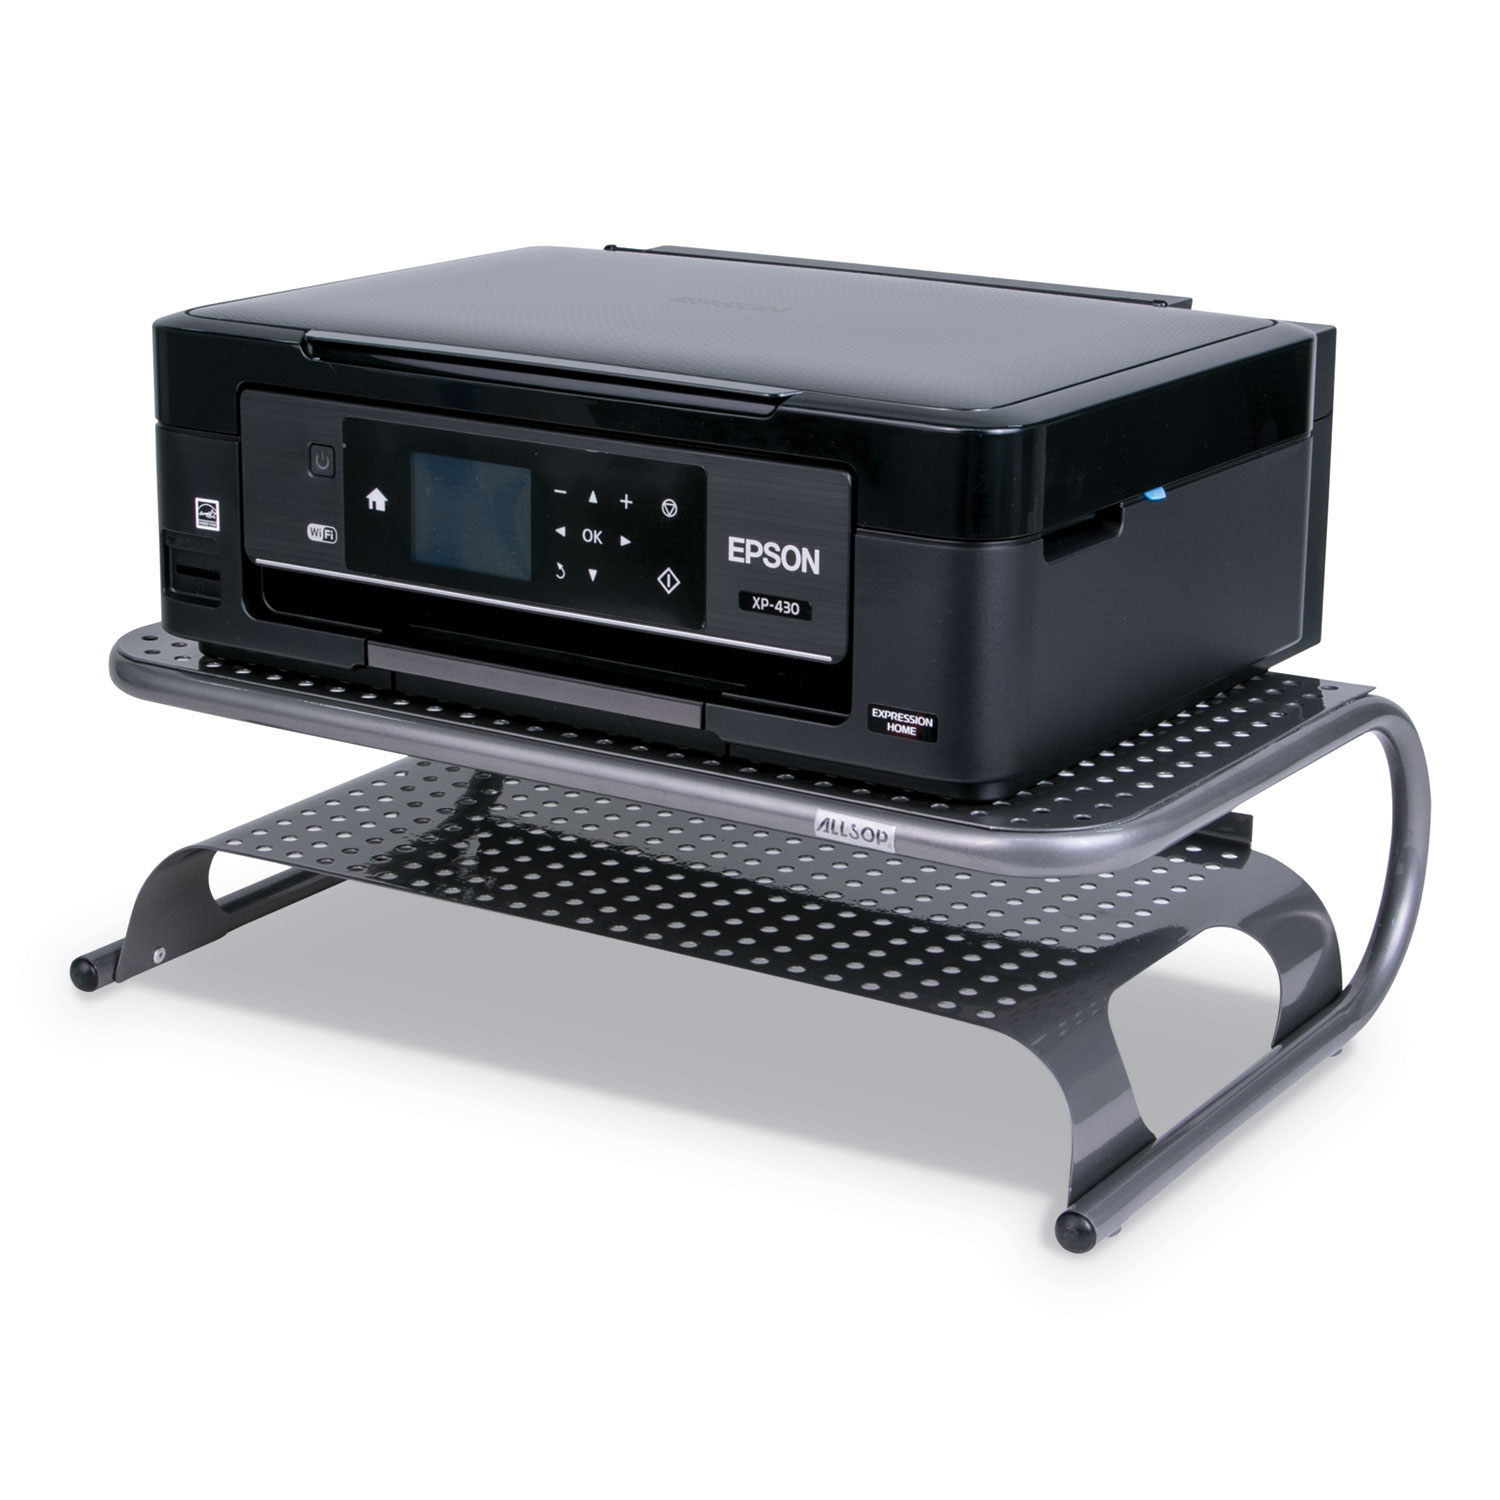  Allsop 27873 Metal Desktop Printer/Monitor Stand, 18 1/2 x 12 x 5 3/4, Pewter (ASP27873) 